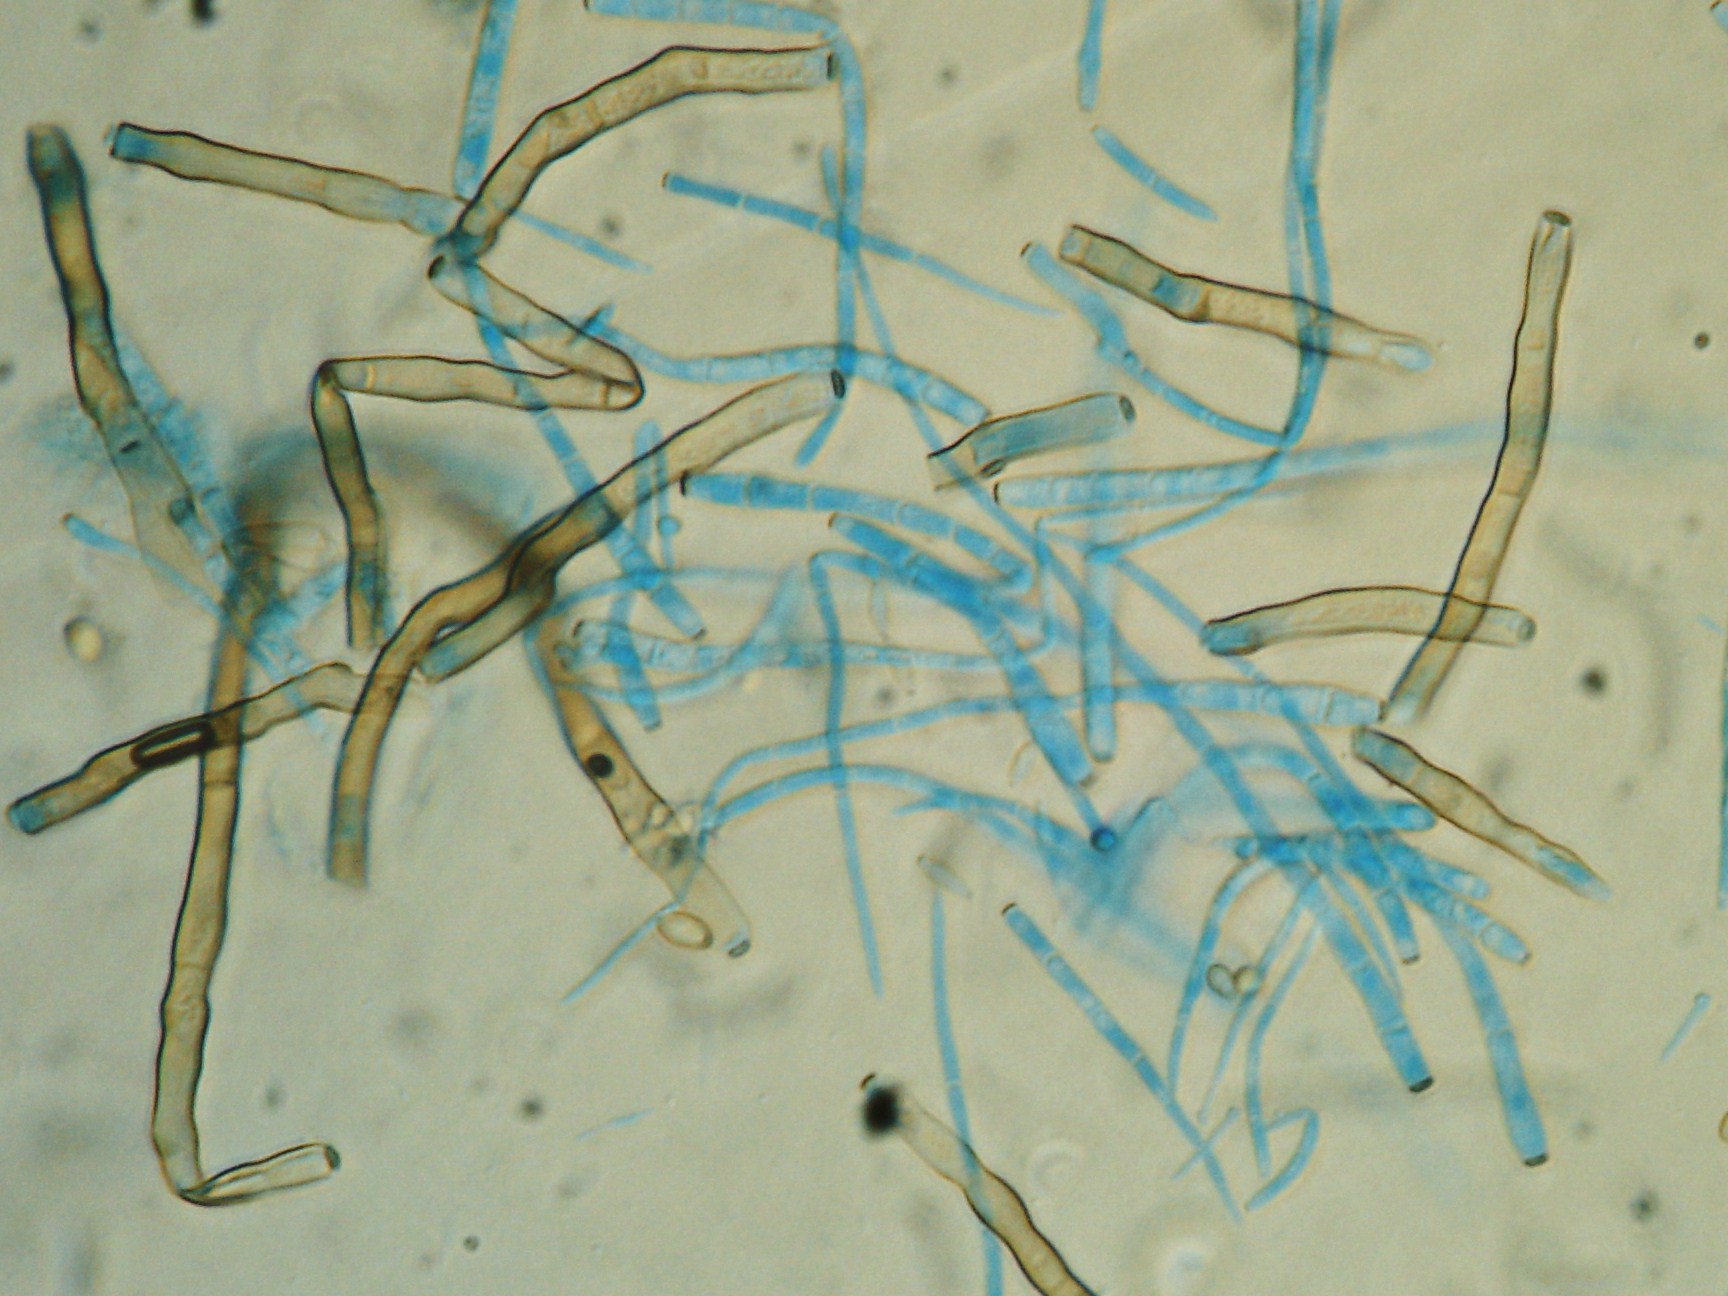 <p><b>Conídios e conidióforos de Cercospora sp. vistos ao microscópio óptico</b></p><p>Ricardo J. Domingues</p>